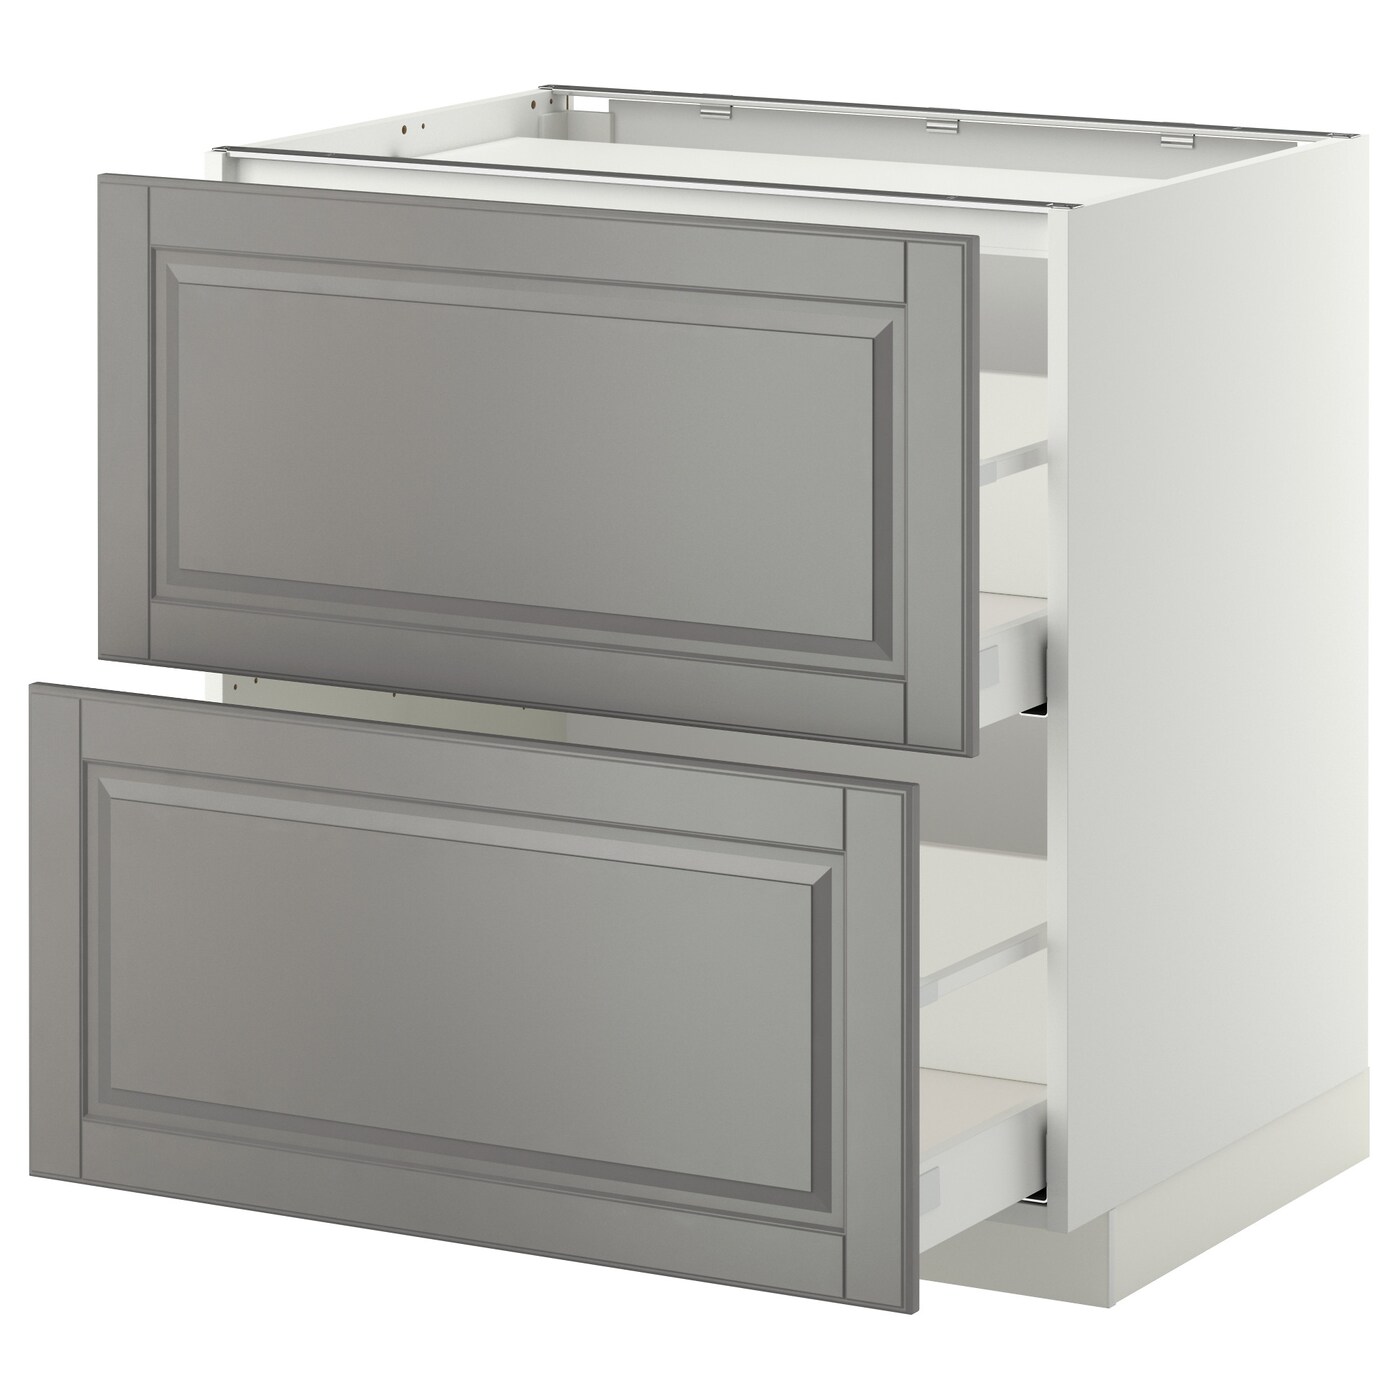 Напольный кухонный шкаф  - IKEA METOD MAXIMERA, 88x62x80см, белый/серый, МЕТОД МАКСИМЕРА ИКЕА